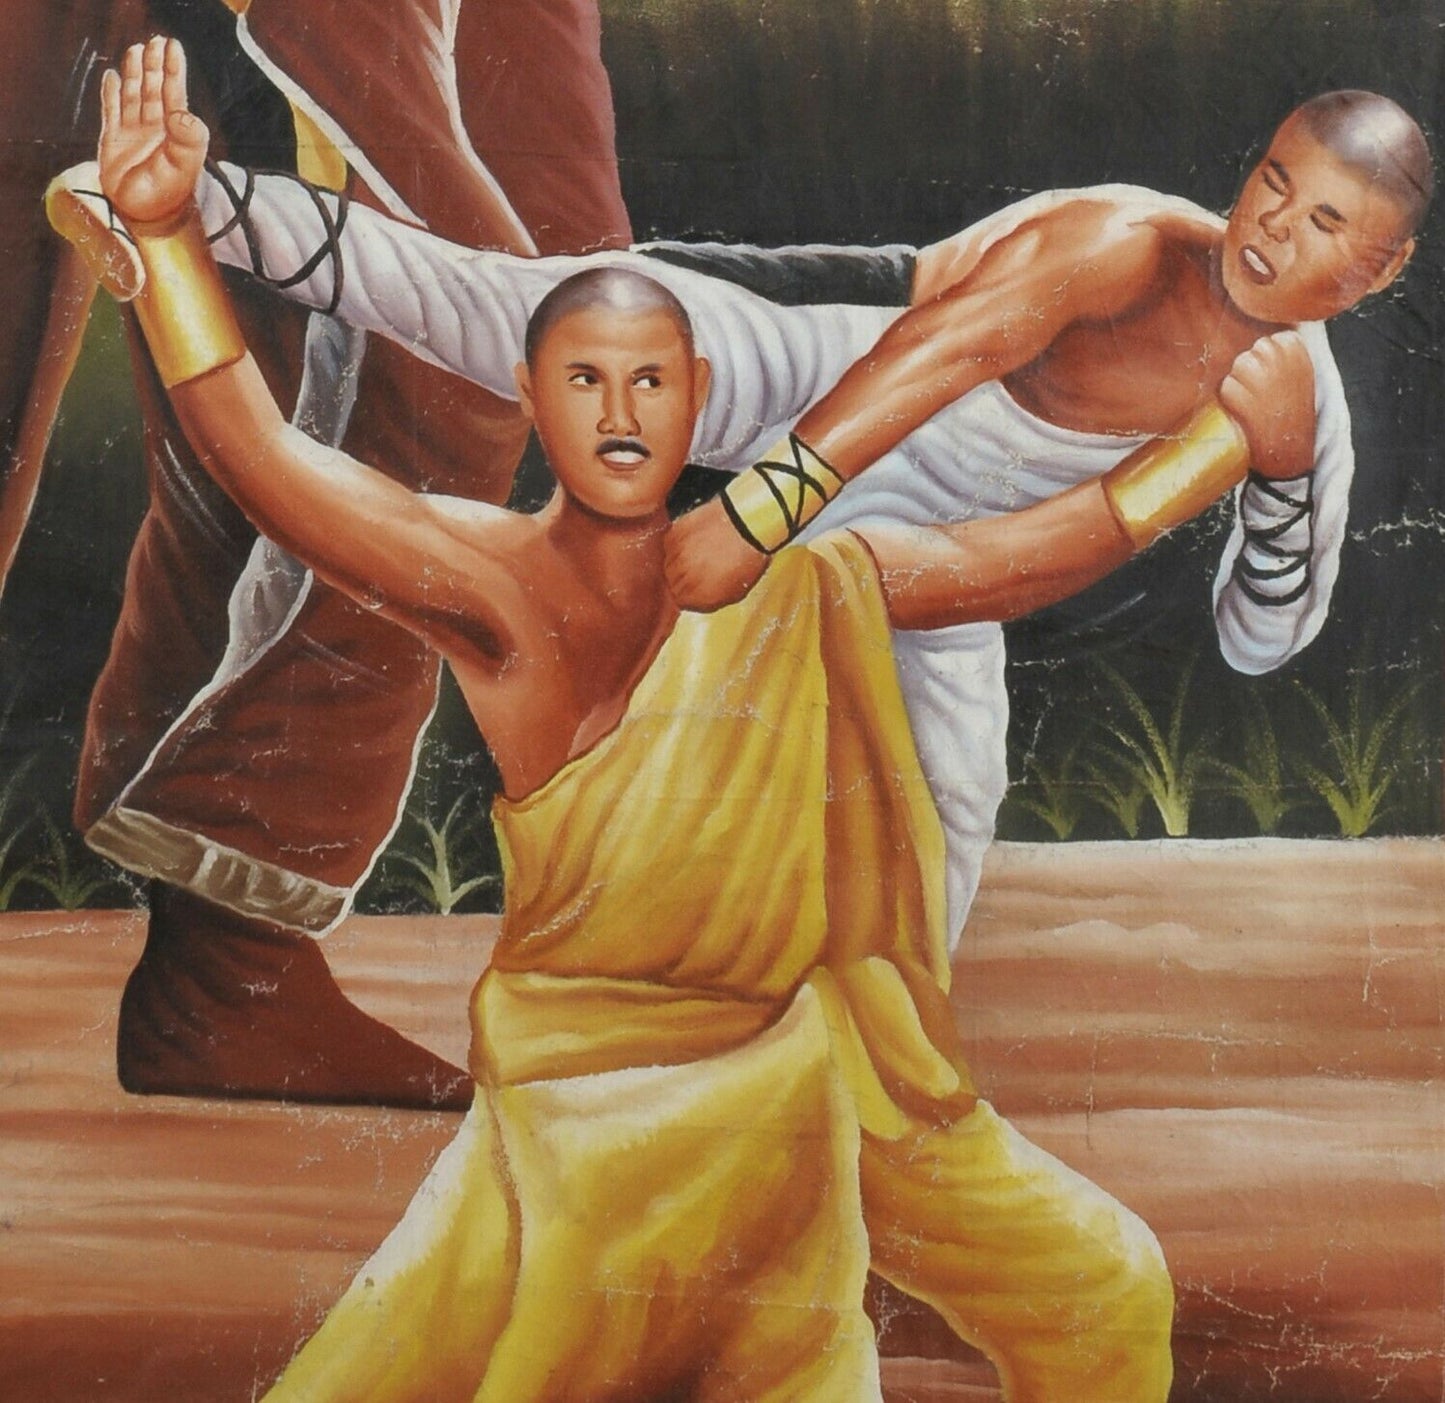 Cartel de la película Arte de la pared del cine africano pintado a mano Ghana SHAOLIN VRS LAMA - Tribalgh